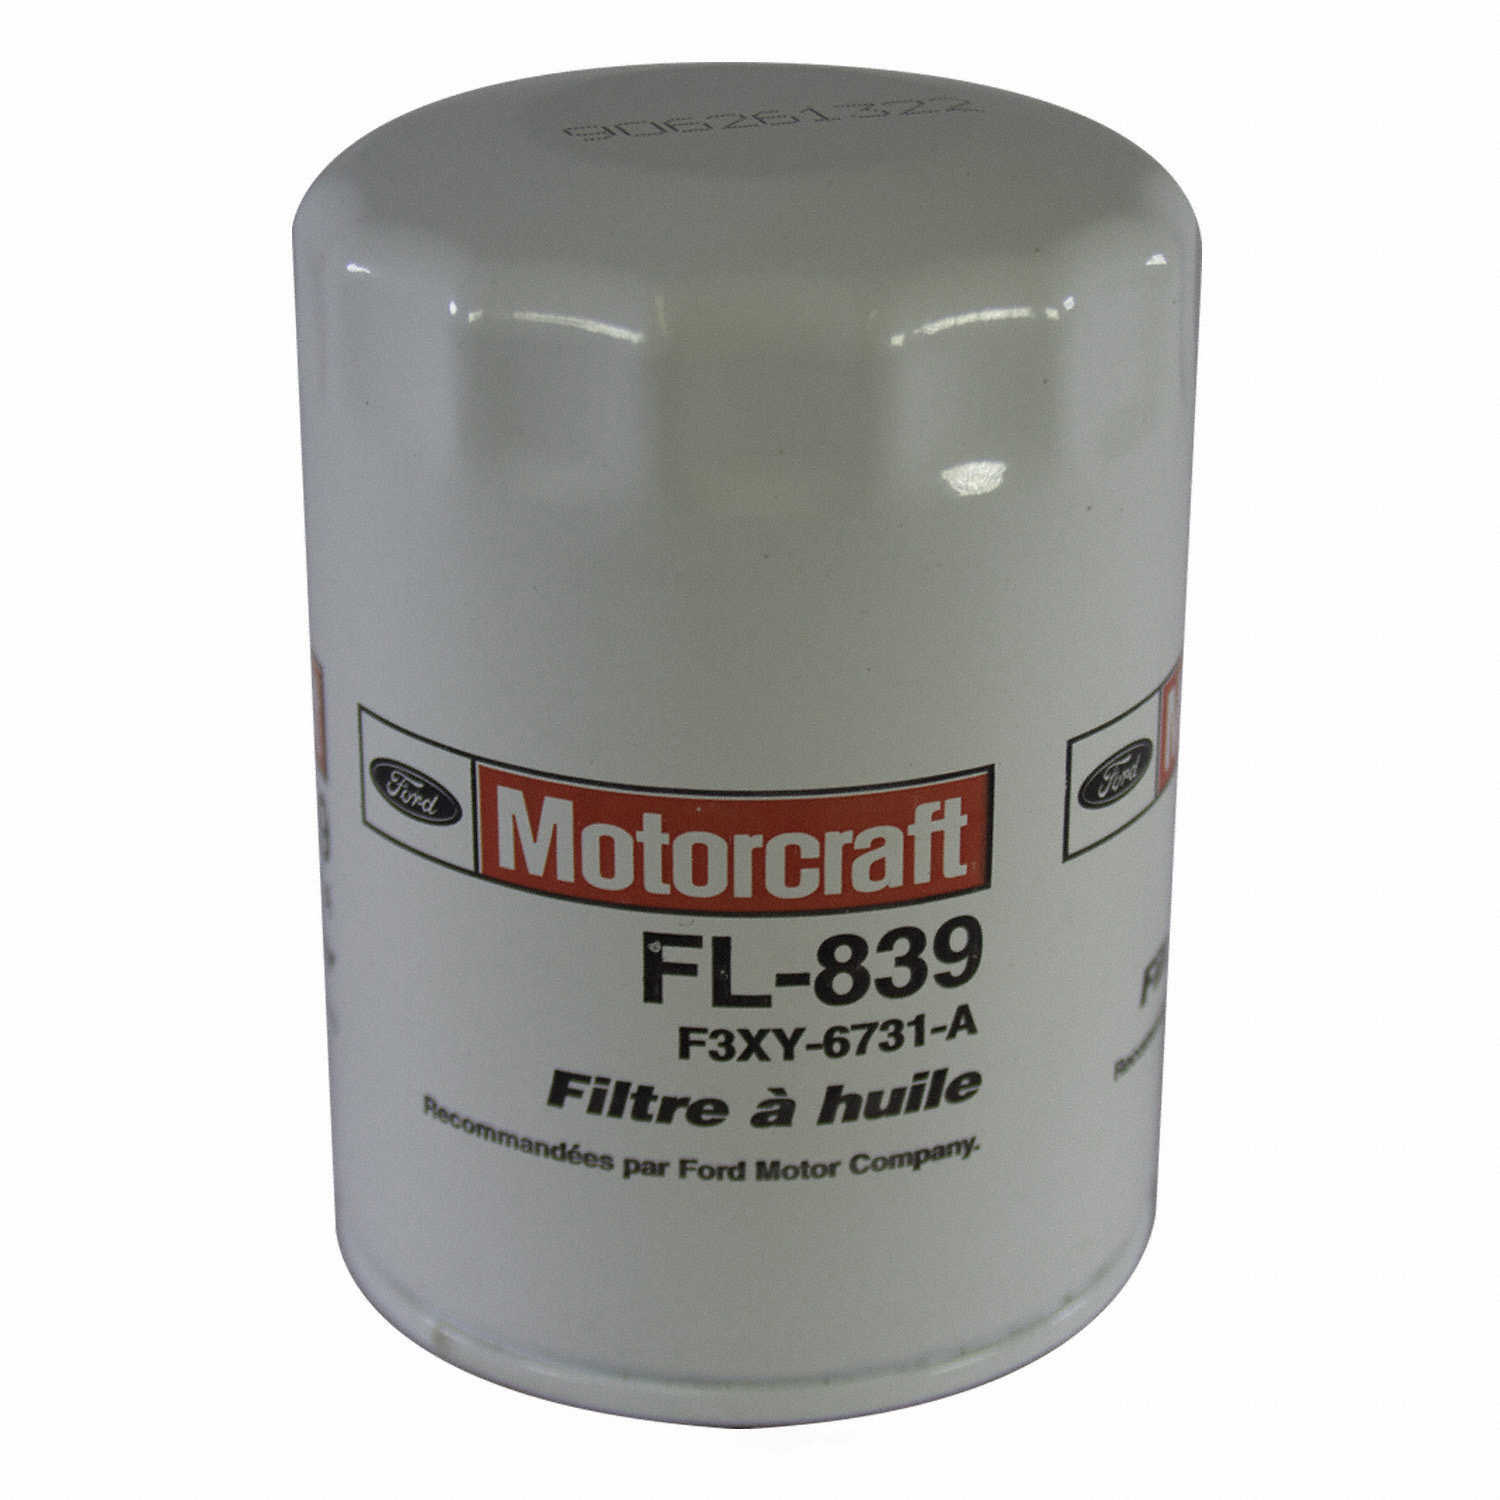 MOTORCRAFT - Engine Oil Filter - MOT FL-839